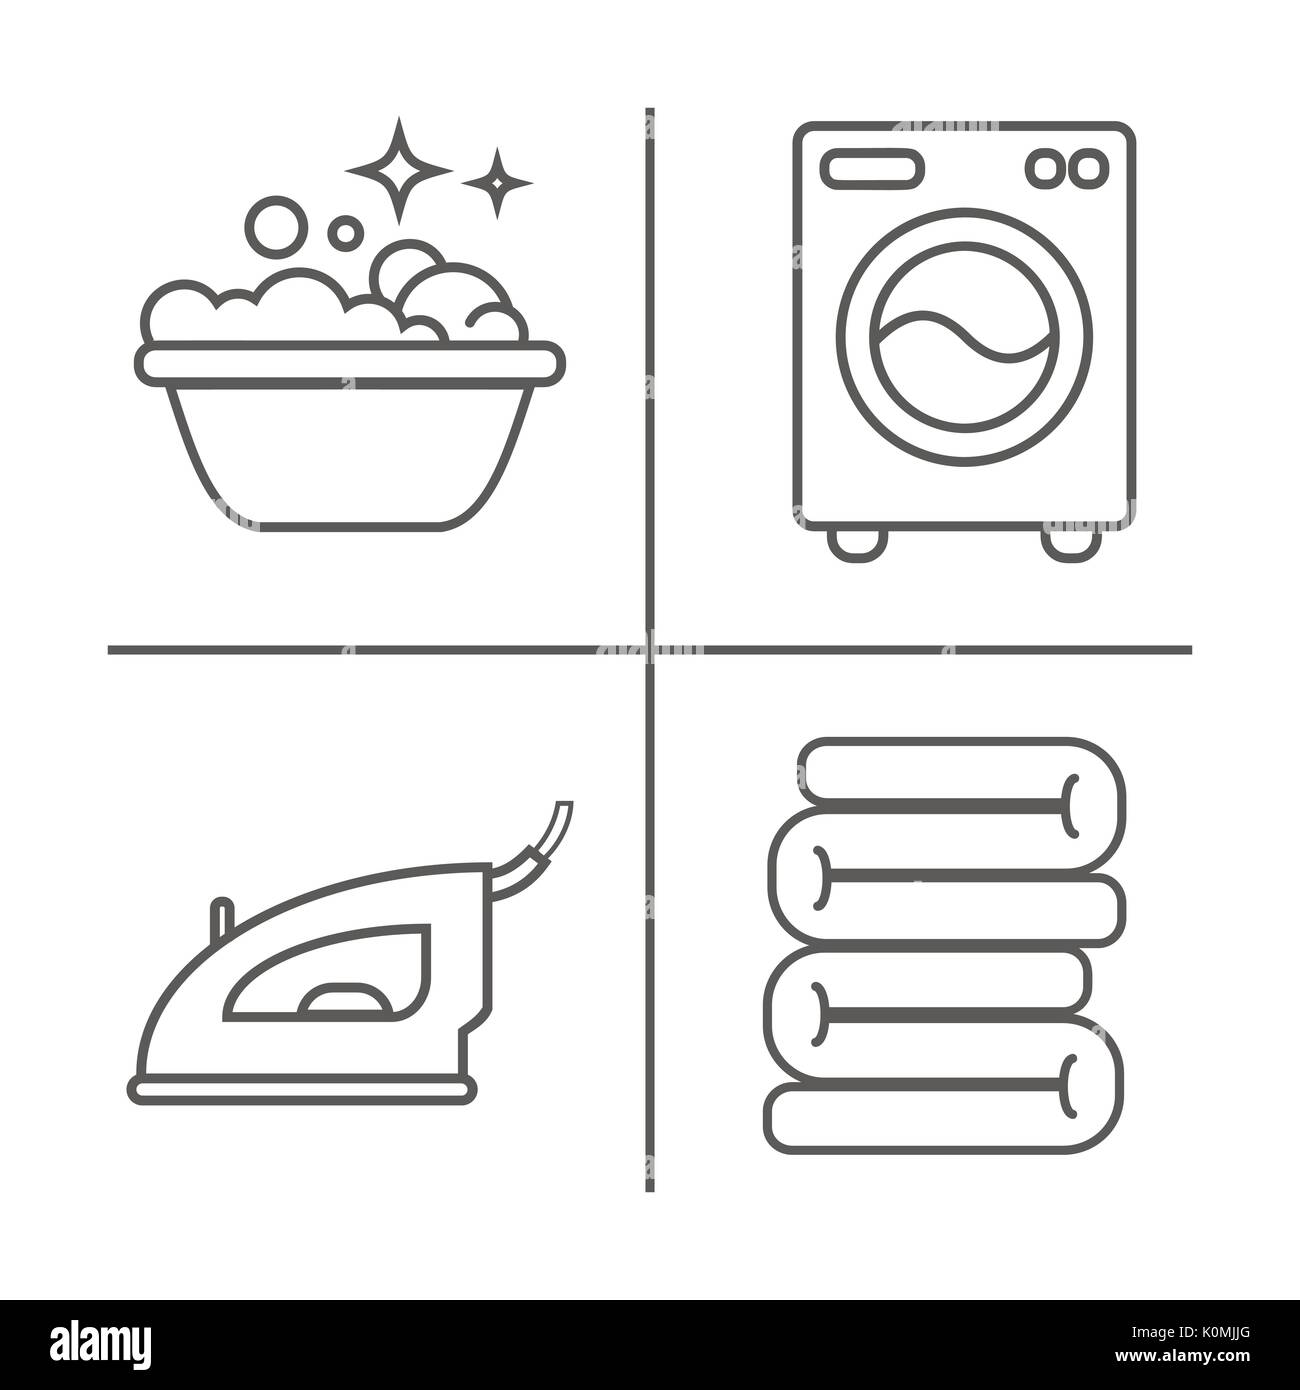 Waschen, Bügeln, saubere Wäsche Zeile für Symbole. Waschmaschine,  Bügeleisen, Handwäsche und andere clining Symbol. Um im Haus lineare  Anzeichen für Reinigung Stock-Vektorgrafik - Alamy